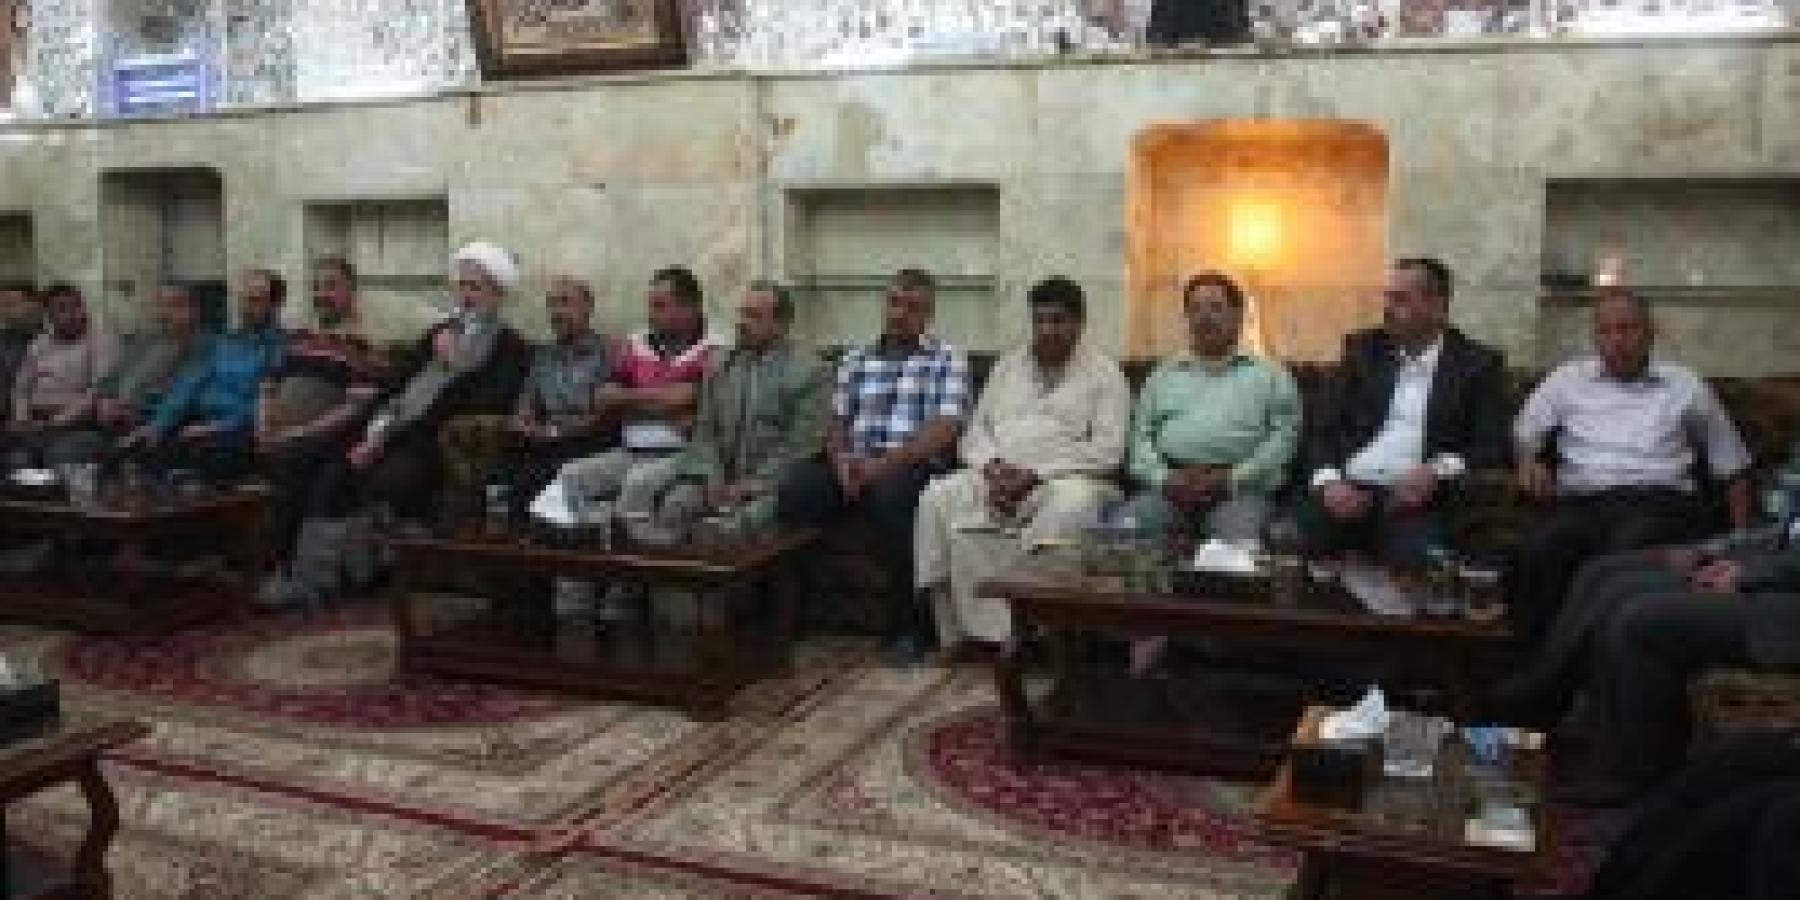 مجموعة من أساتذة الجامعات العراقية يتشرفون بزيارة العتبة العلوية المقدسة